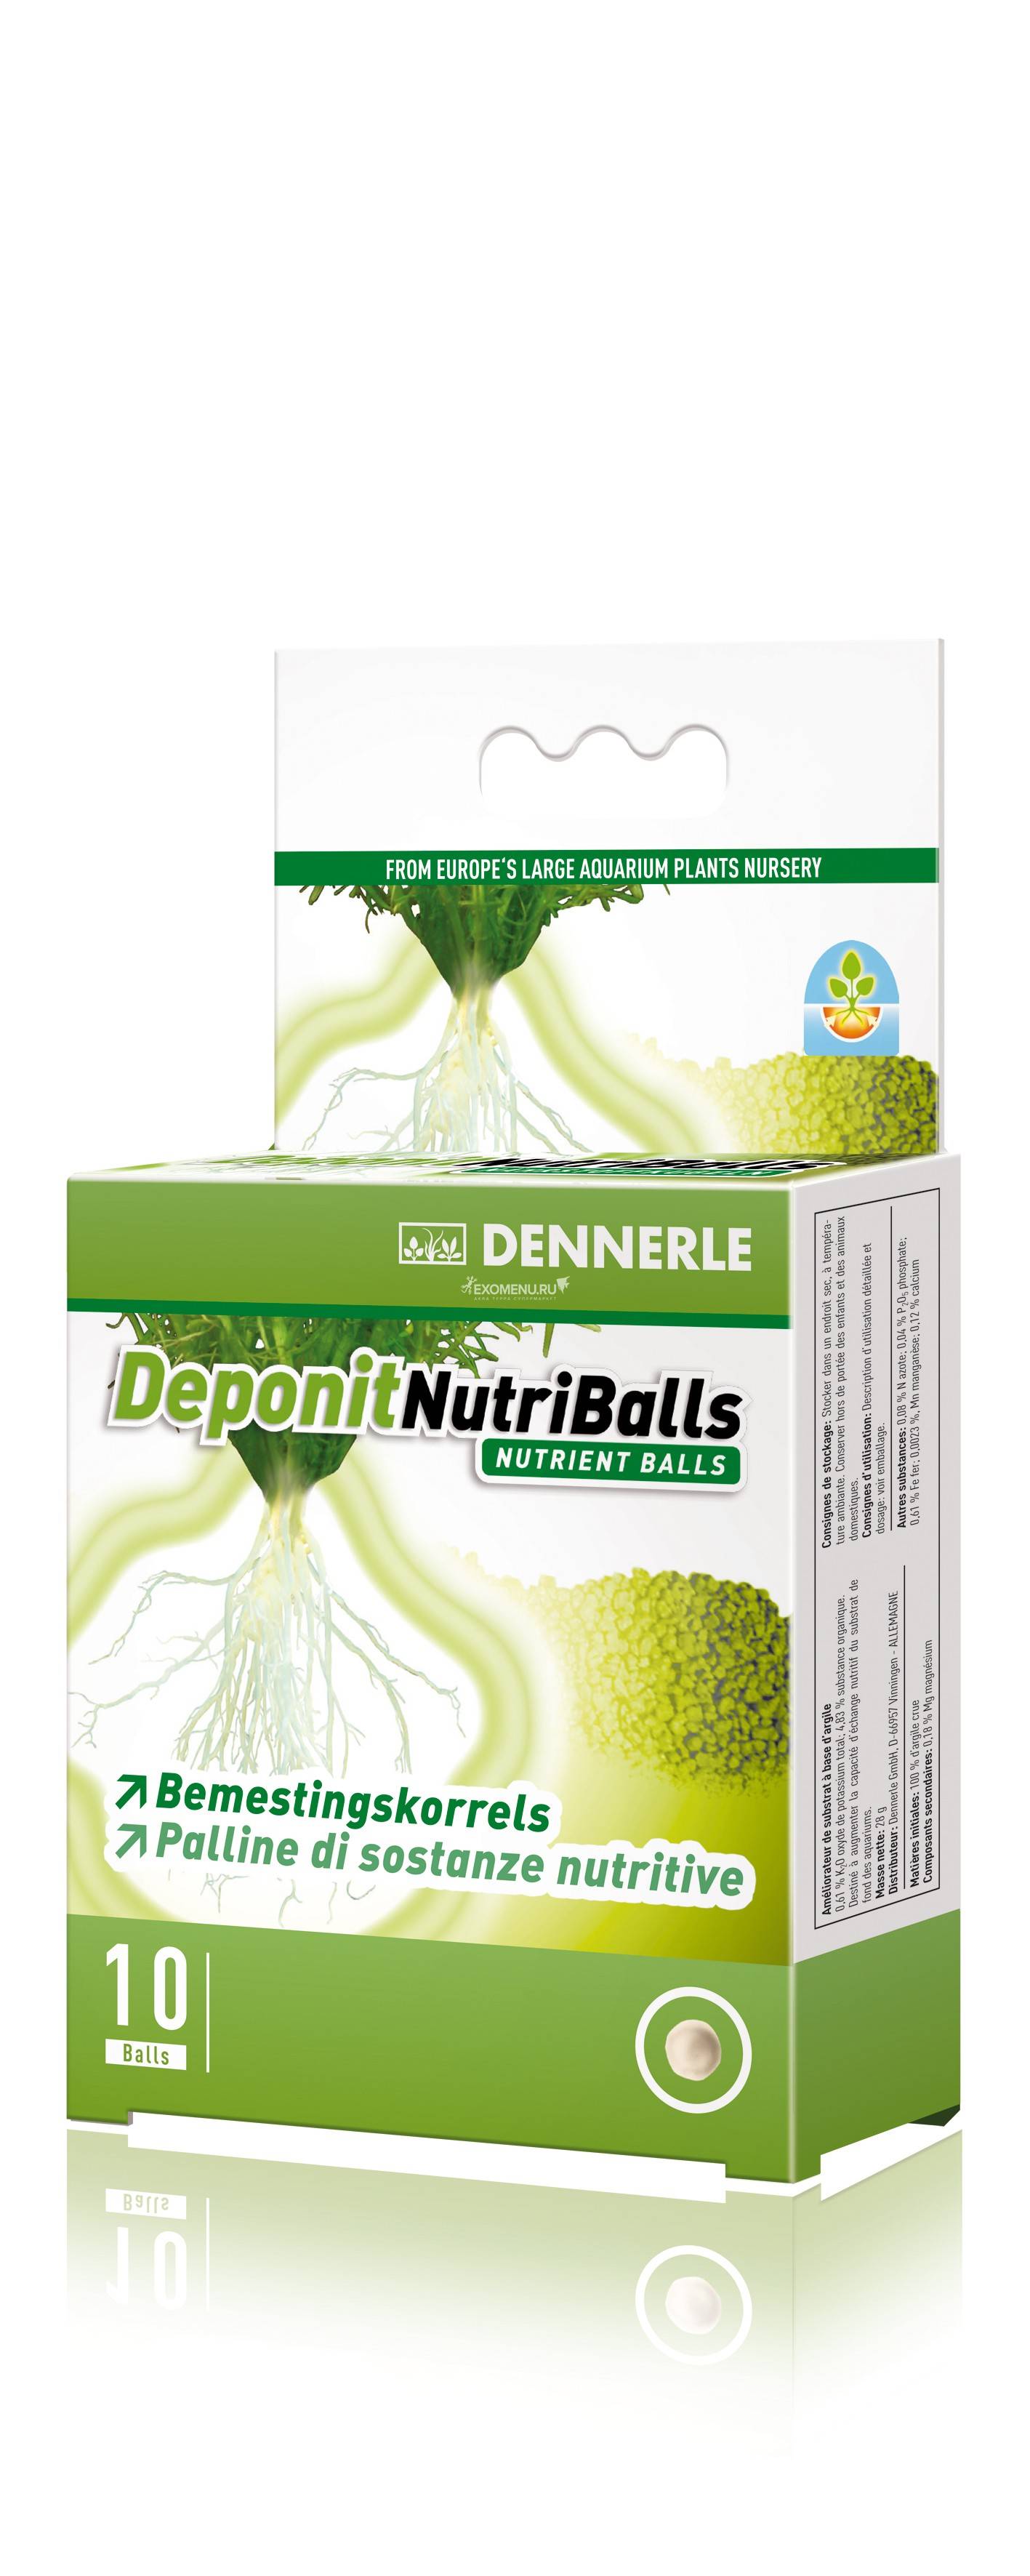 Dennerle Deponit NutriBalls - Корневое удобрение в виде шариков для любых аквариумных растений, 10 шт. на 3-10 растений